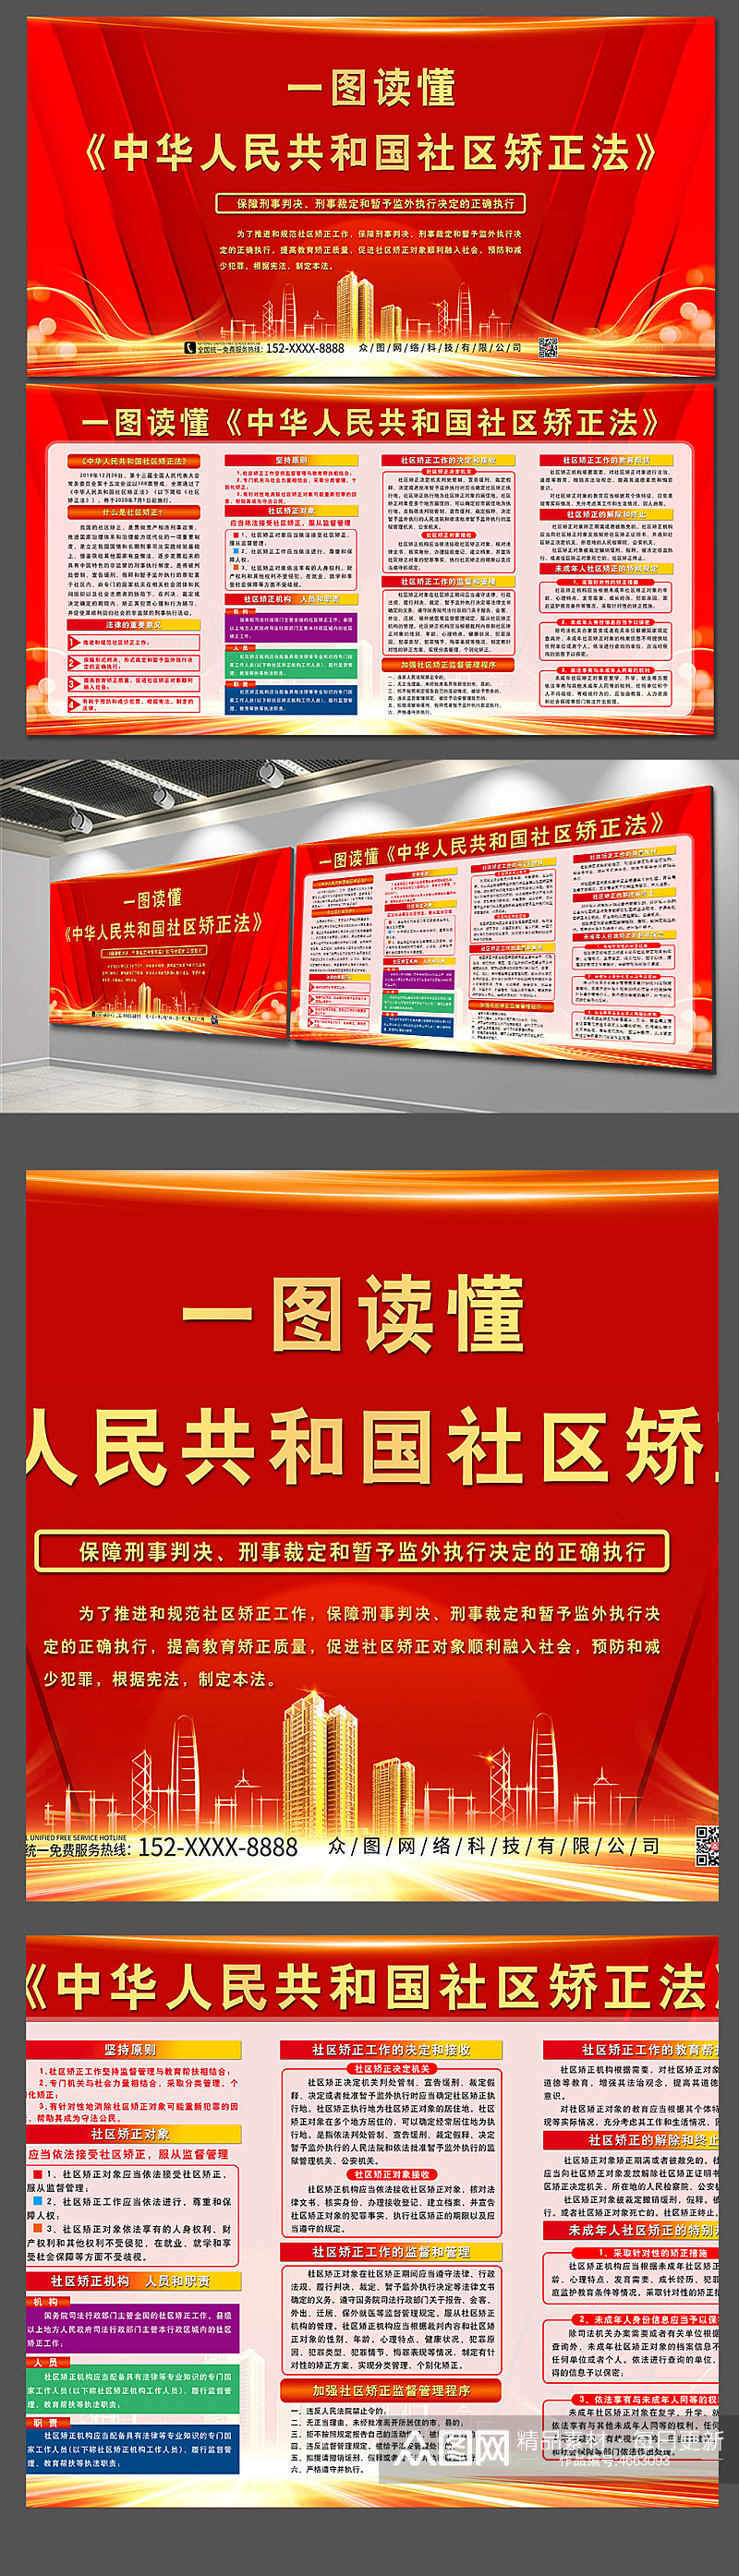 一图读懂中华人民共和国社区矫正法展板素材